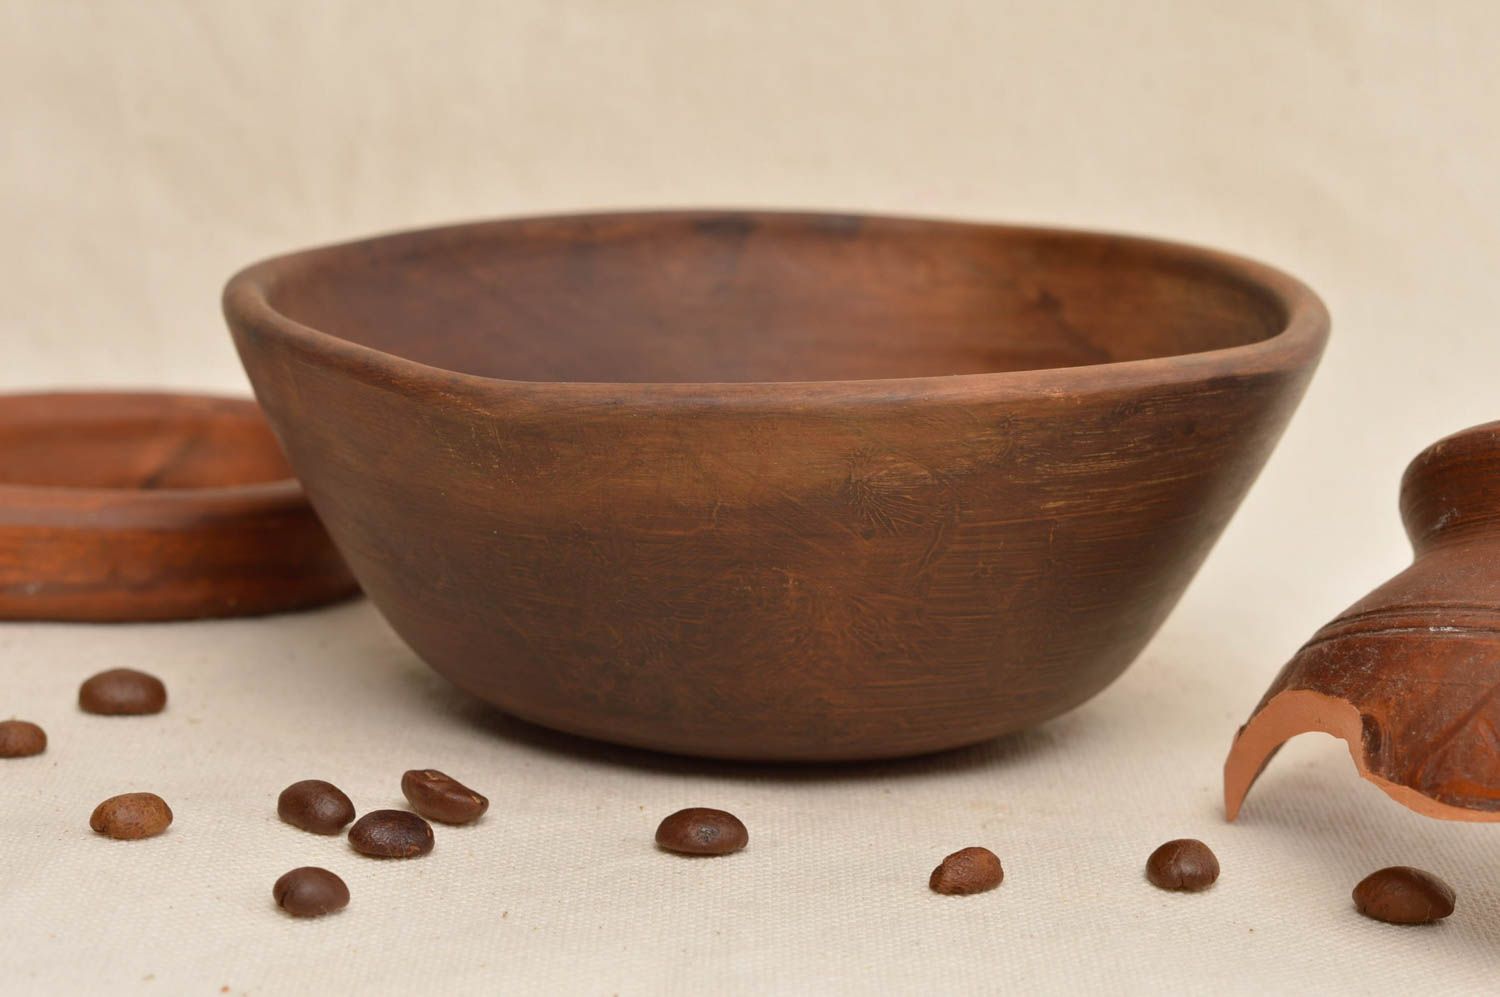 Простая миска из глины коричневого цвета посуда ручной работы для подачи блюд фото 1